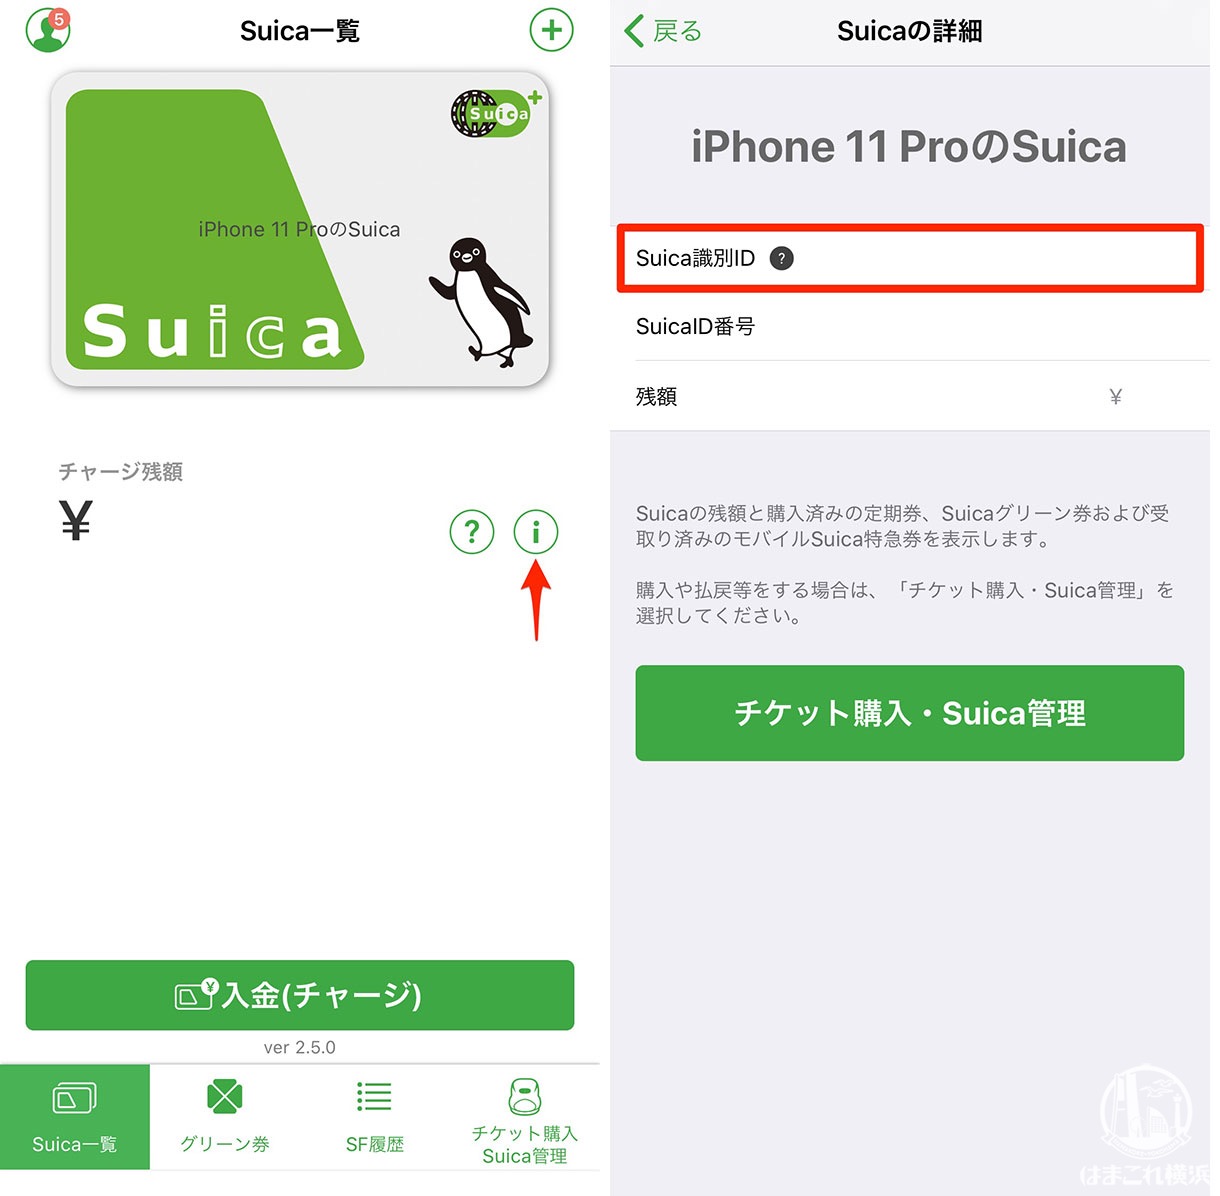 iPhoneモバイルSuica 識別IDの確認方法